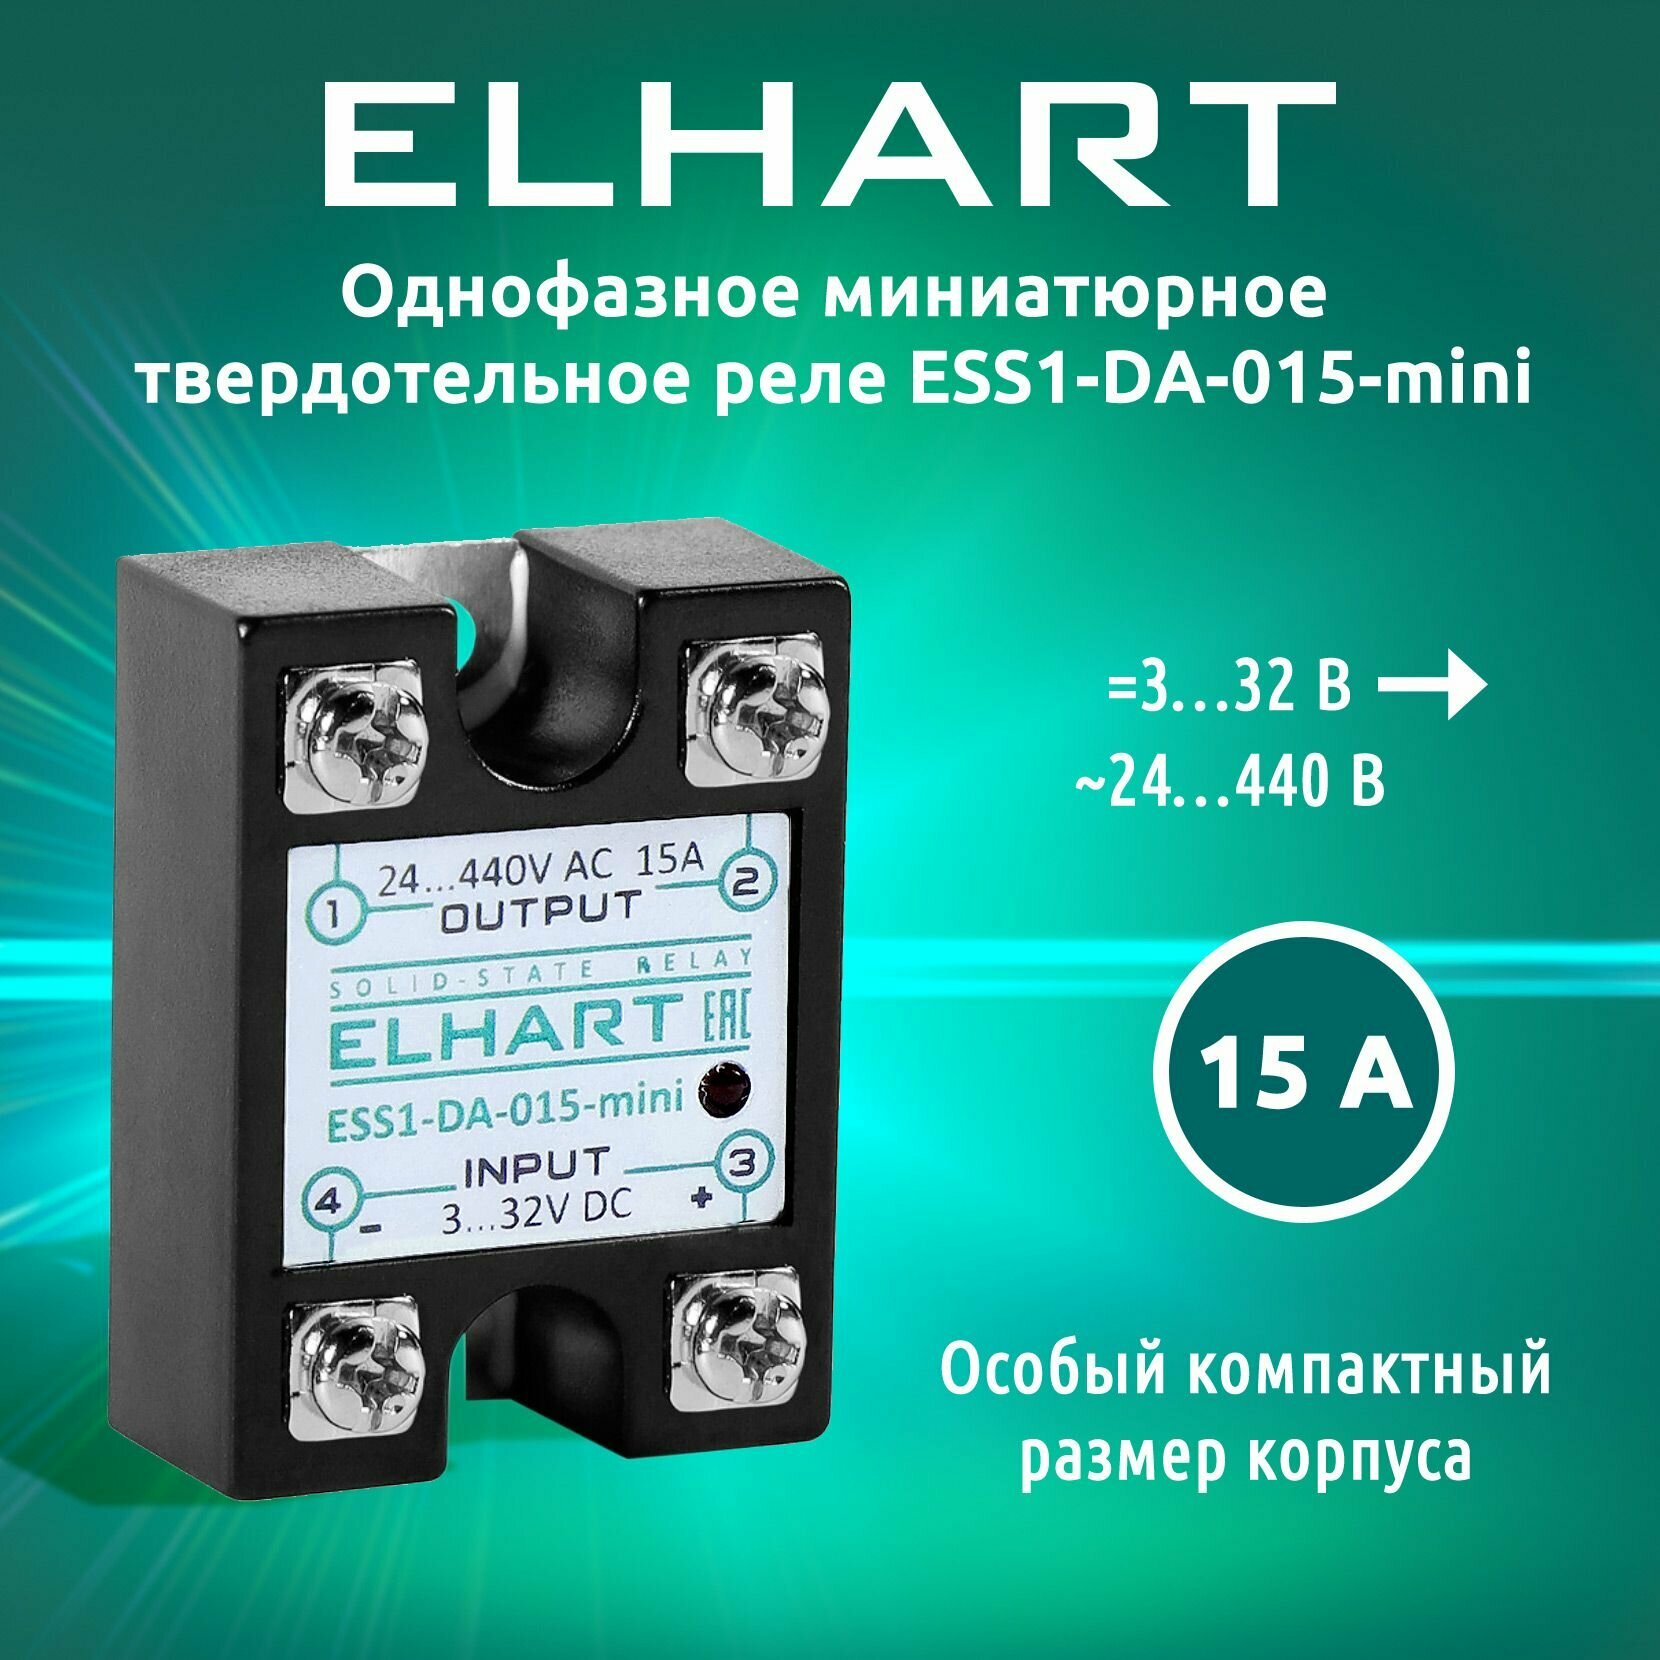 Однофазное твердотельное реле ELHART ESS1-DA-015-mini